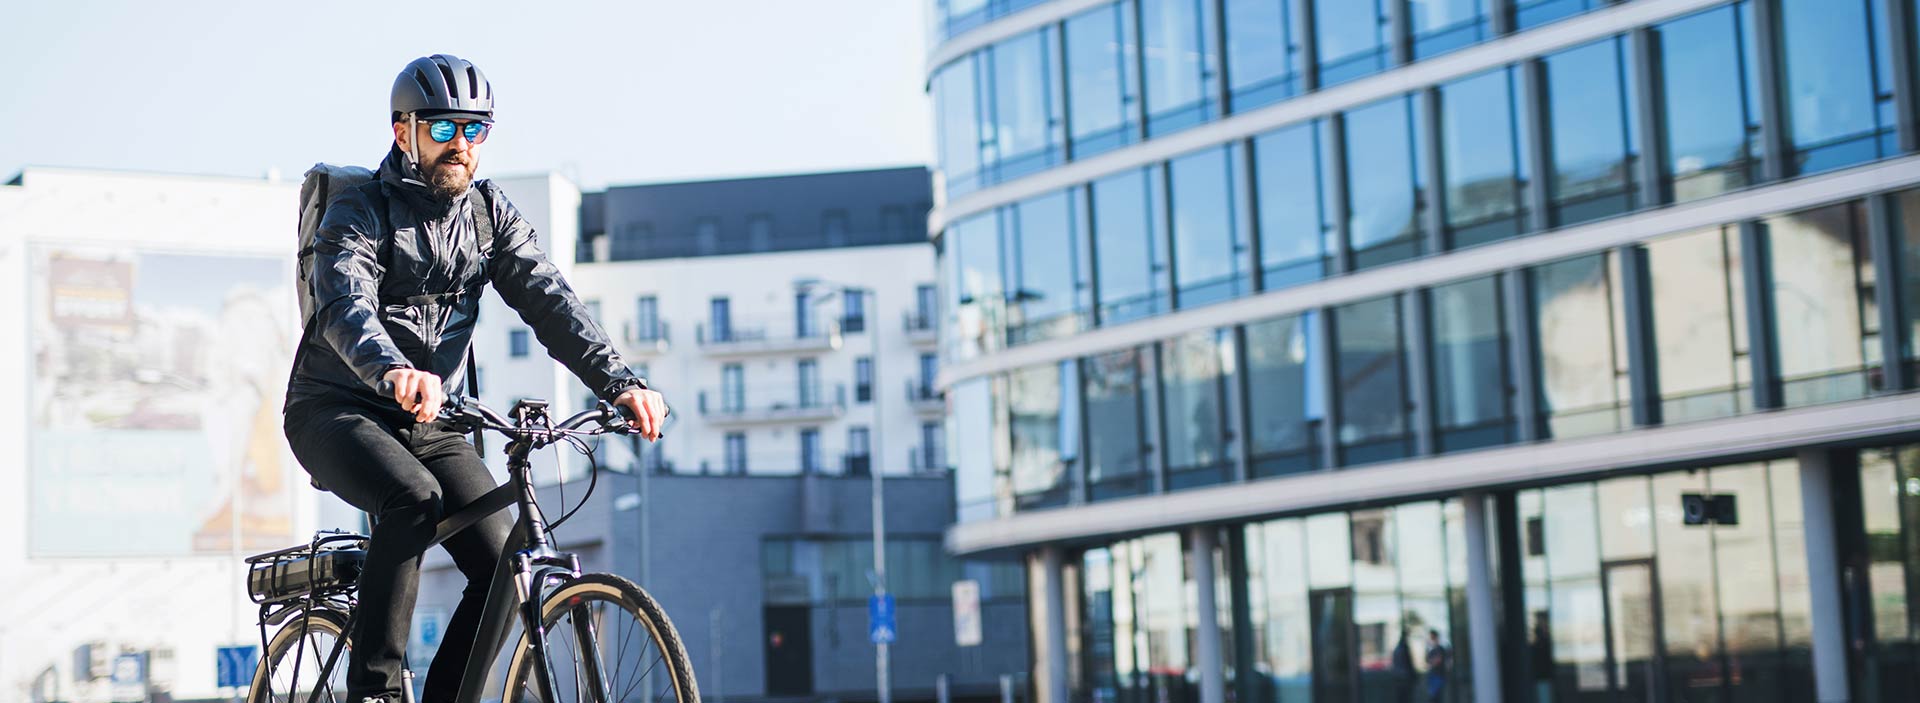 Man på cykel i stadsmiljö - fler upptäcker cykeln enligt WSPs mobilitetsstudie 2022.